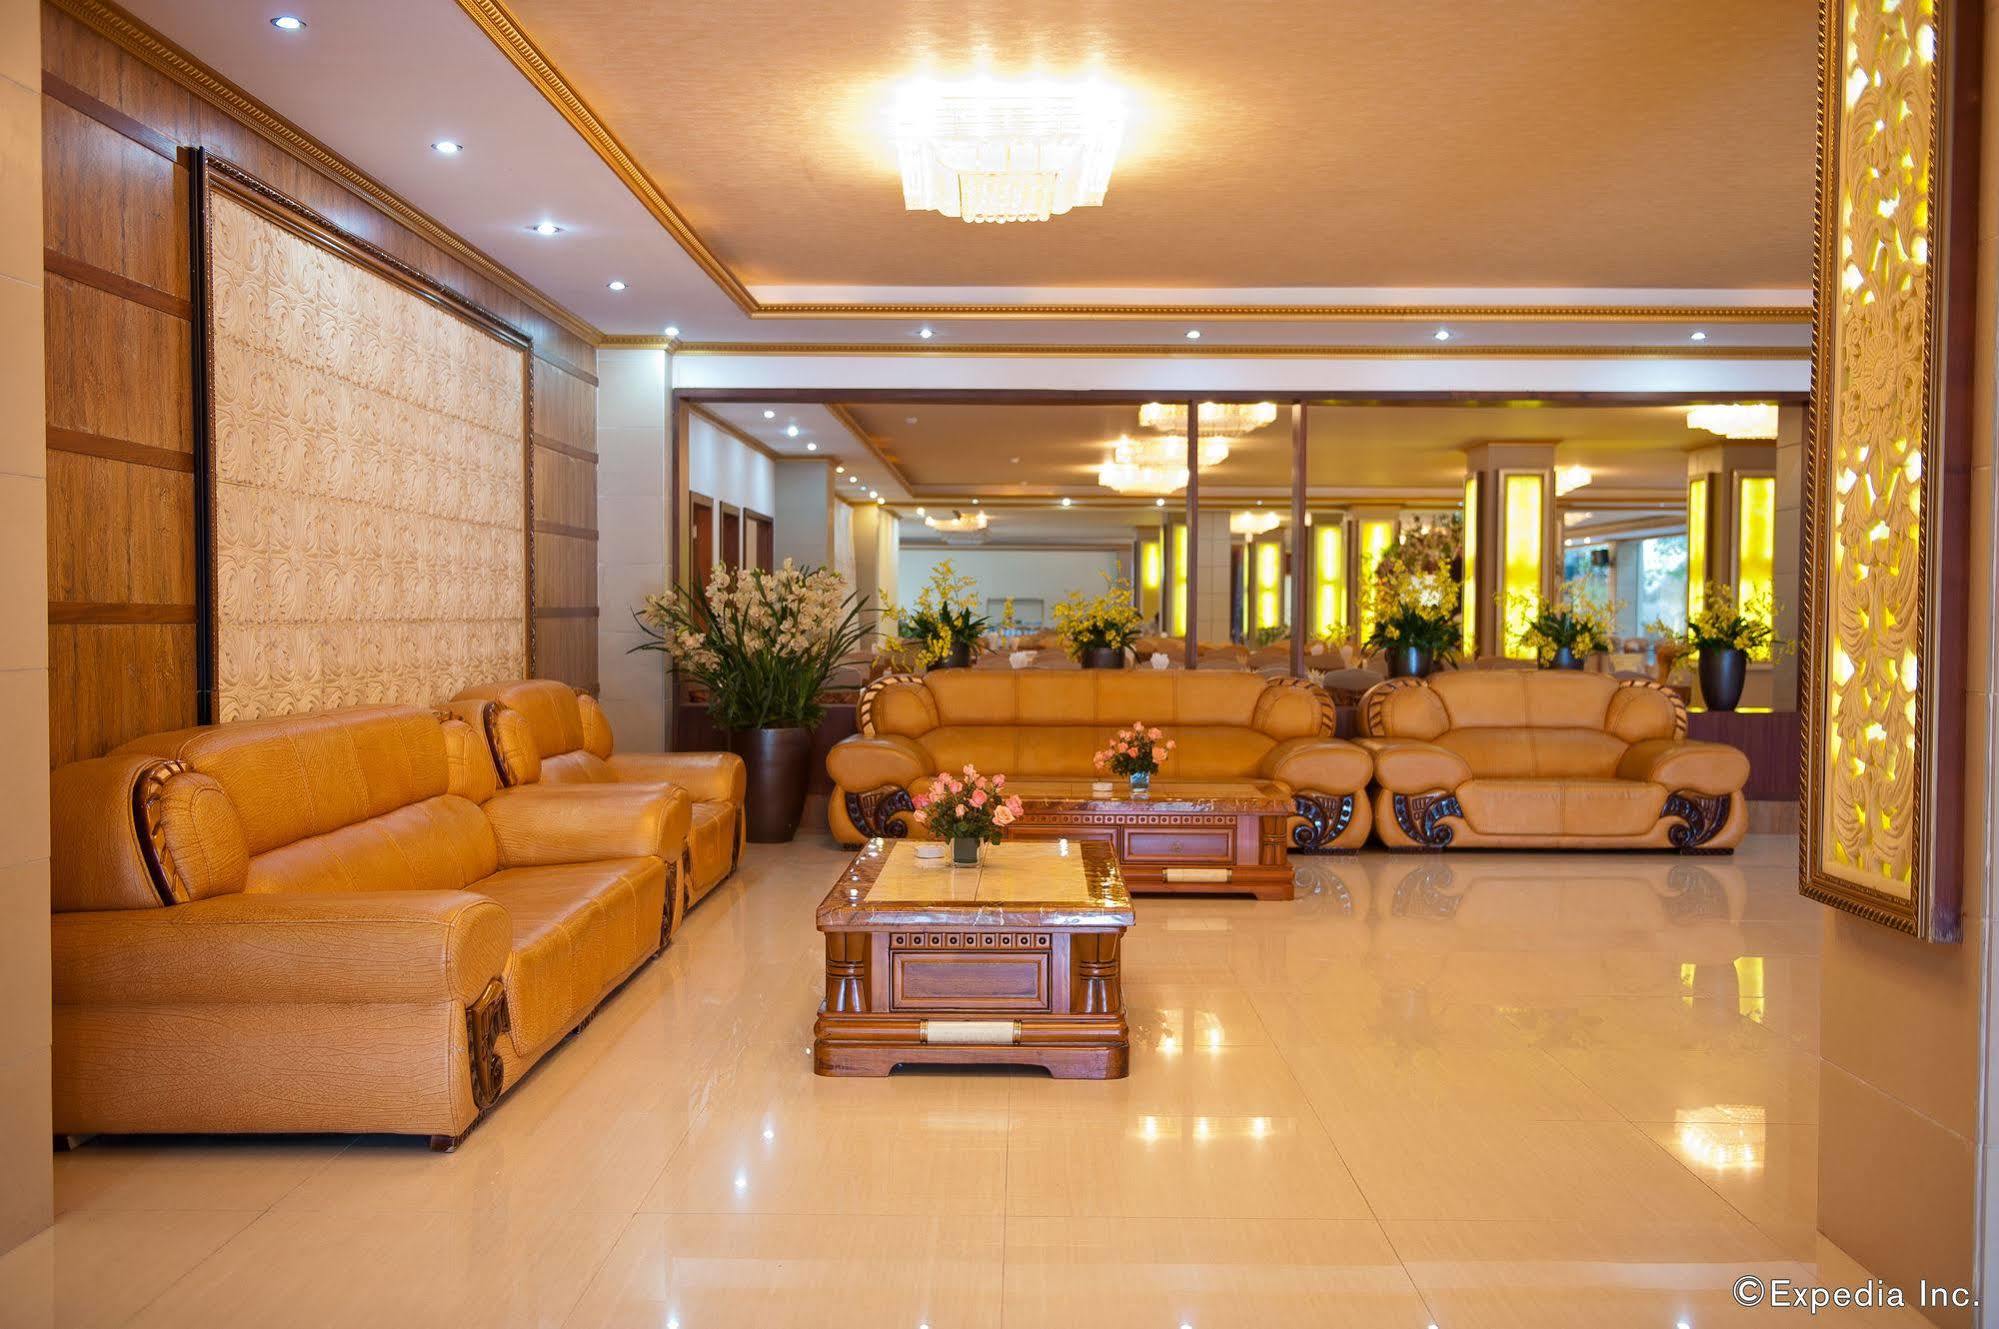 Muong Thanh Sapa Hotel Zewnętrze zdjęcie